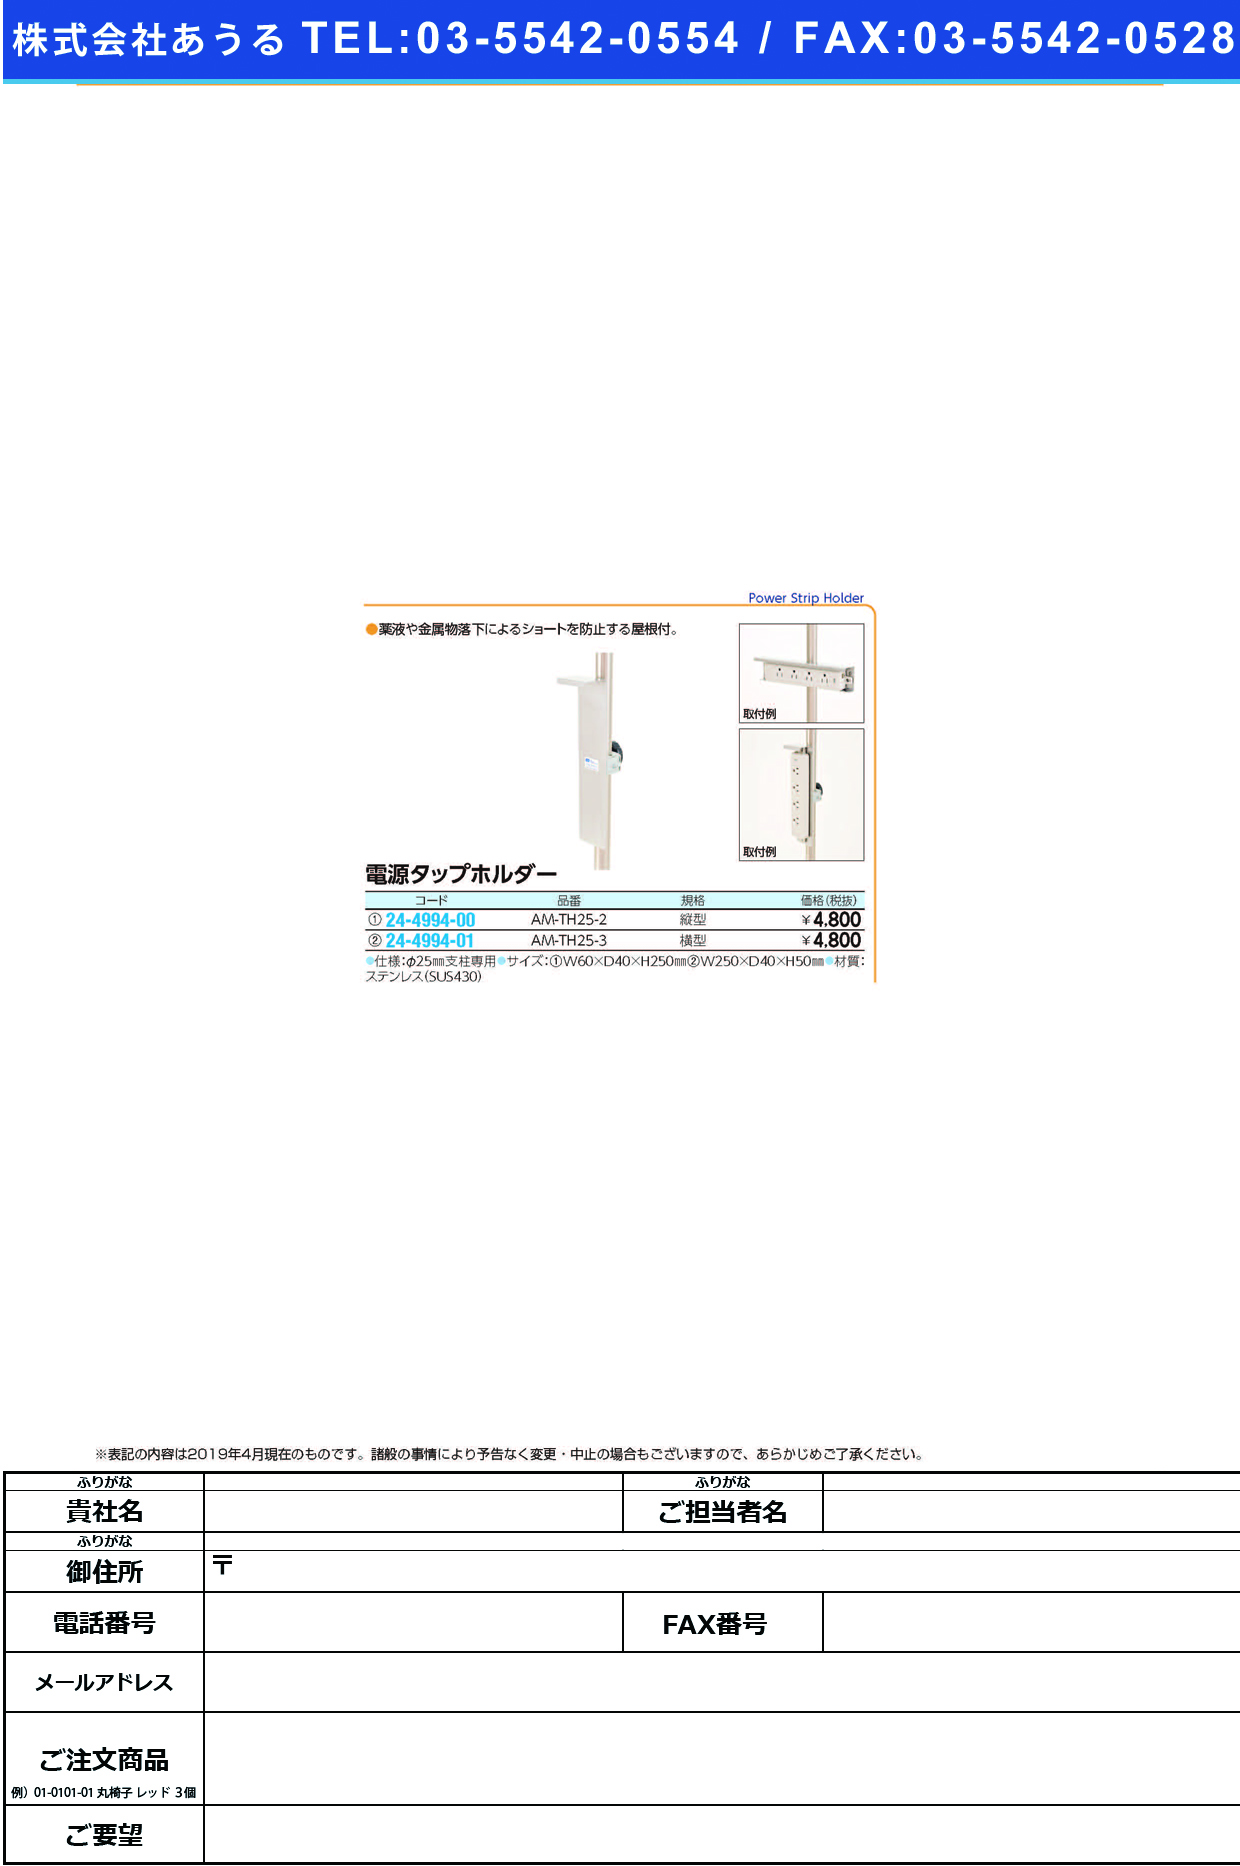 (24-4994-01)電源タップホルダー AM-TH25-3 ﾃﾞﾝｹﾞﾝﾀｯﾌﾟﾎﾙﾀﾞｰ【1個単位】【2019年カタログ商品】